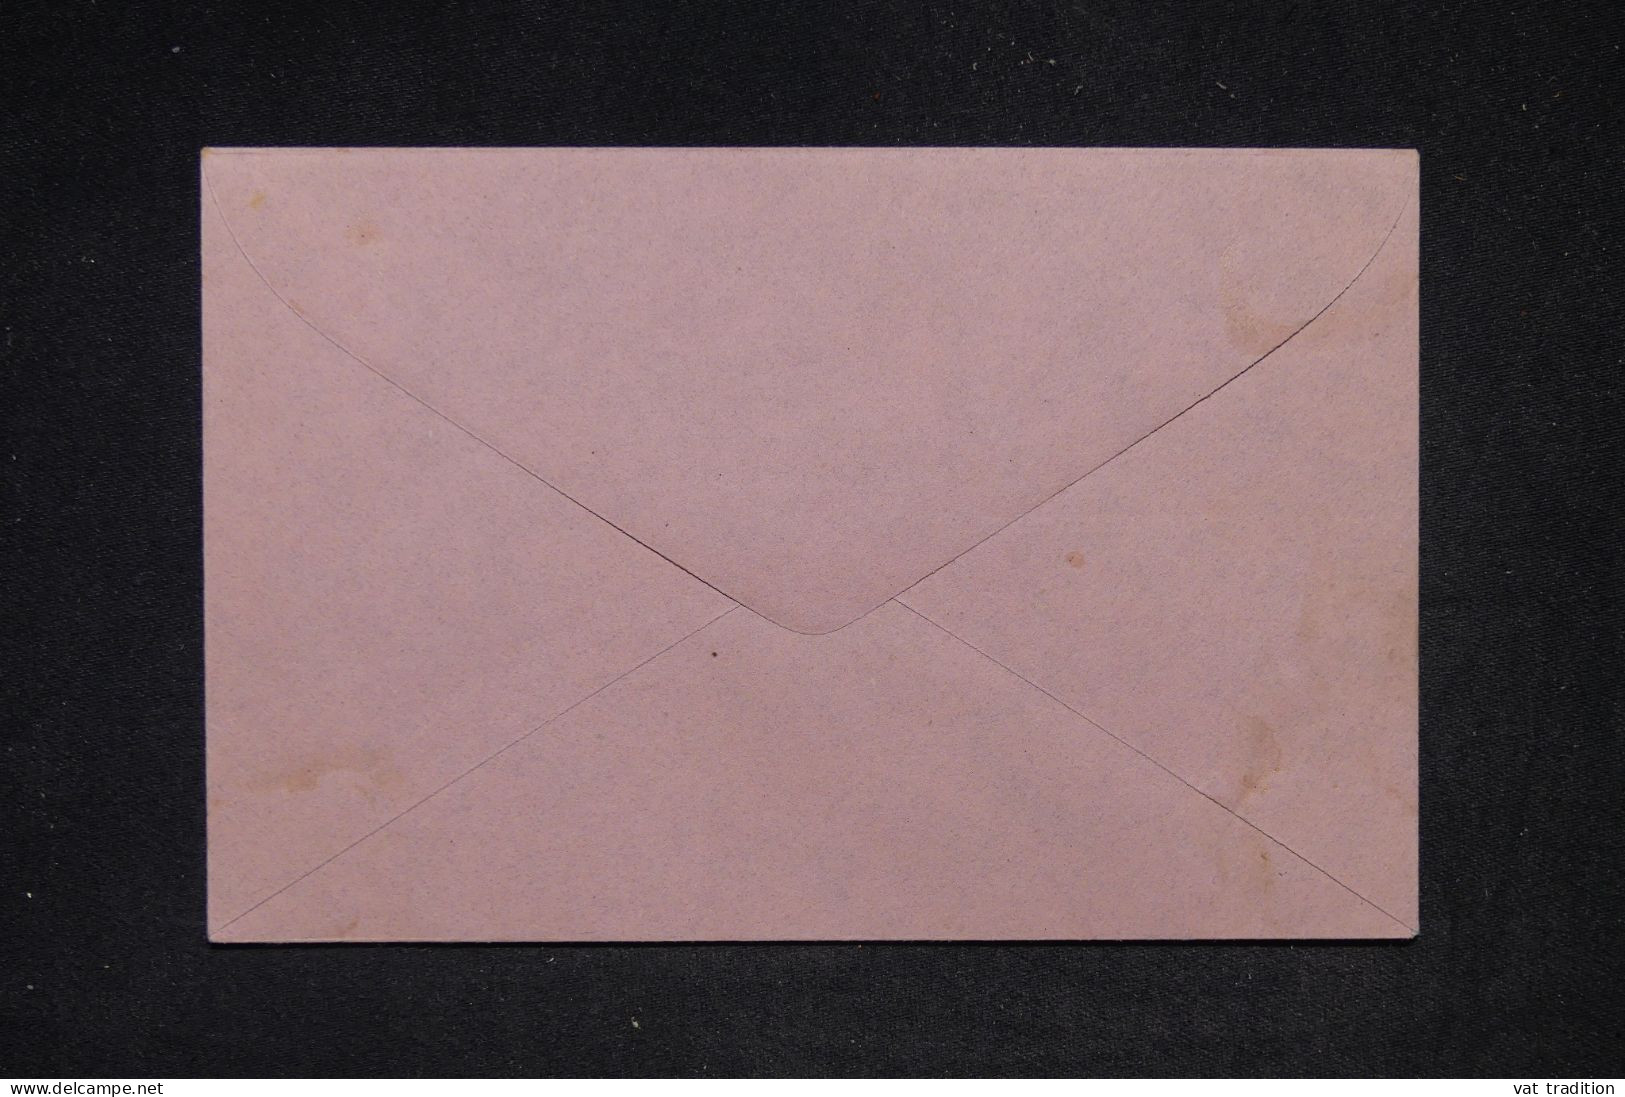 ALLEMAGNE - Entier Postal  Non Circulé - L 149492 - Enveloppes